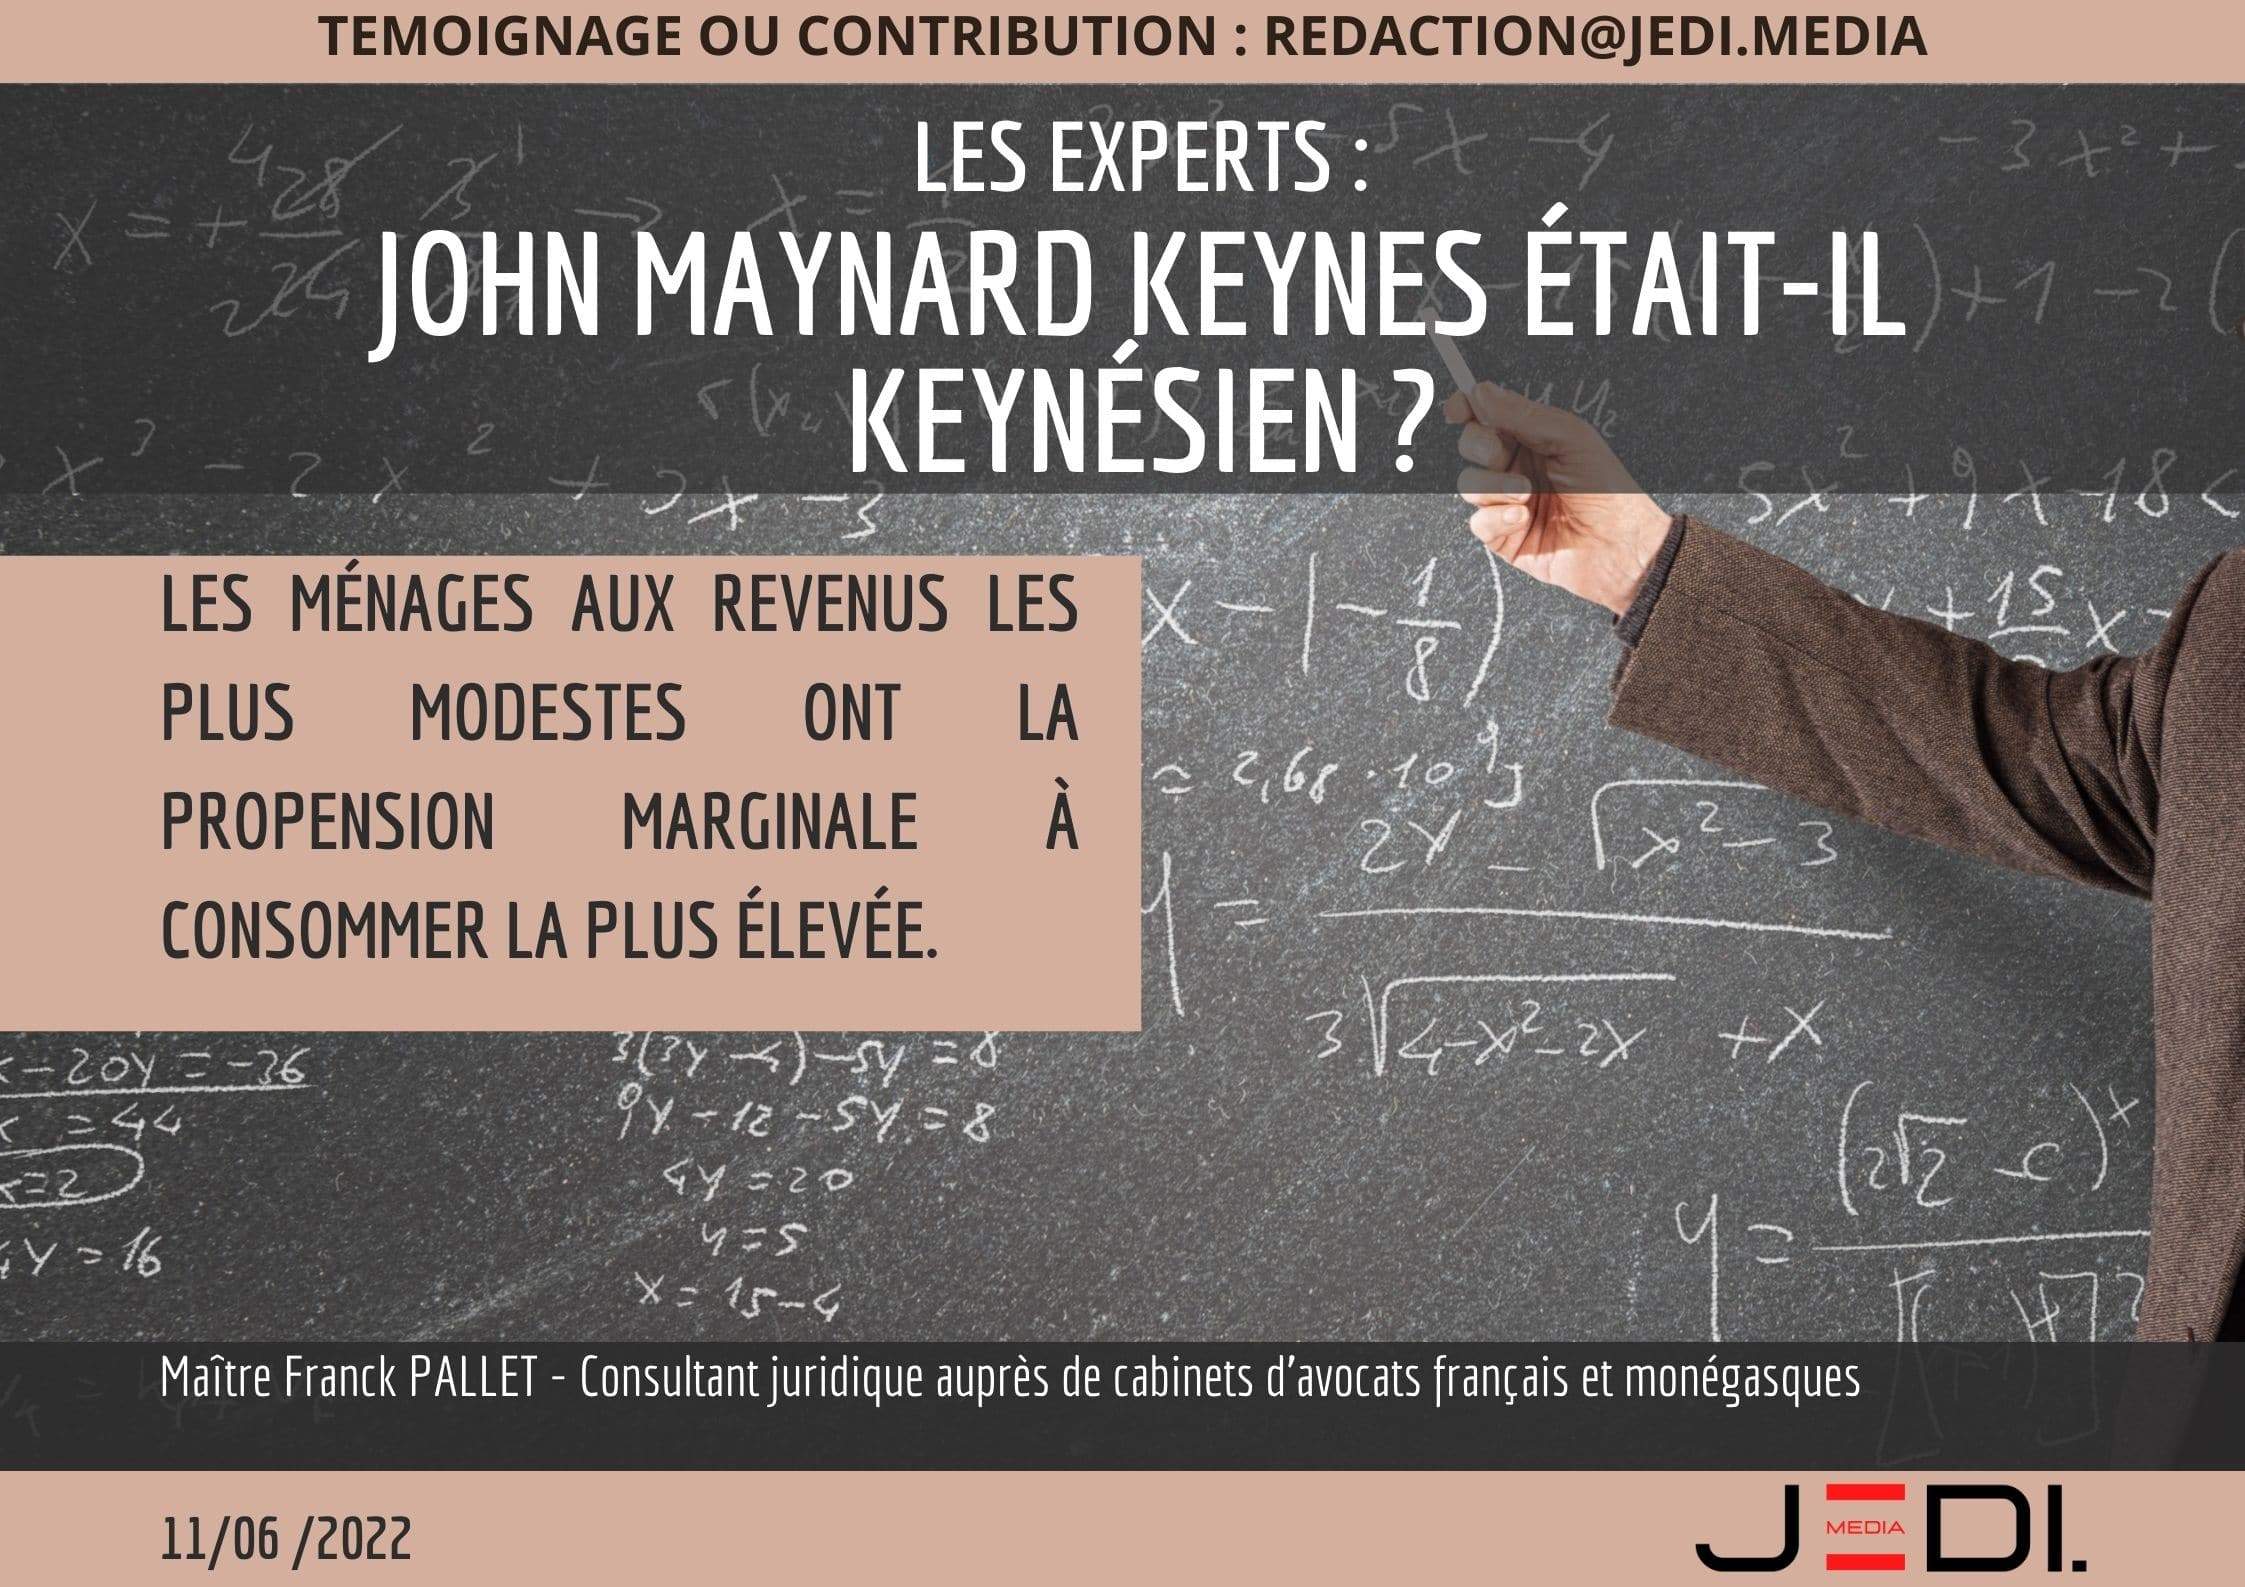 John Maynard Keynes, Théorie générale de l'emploi, de l'intérêt et de la monnaie